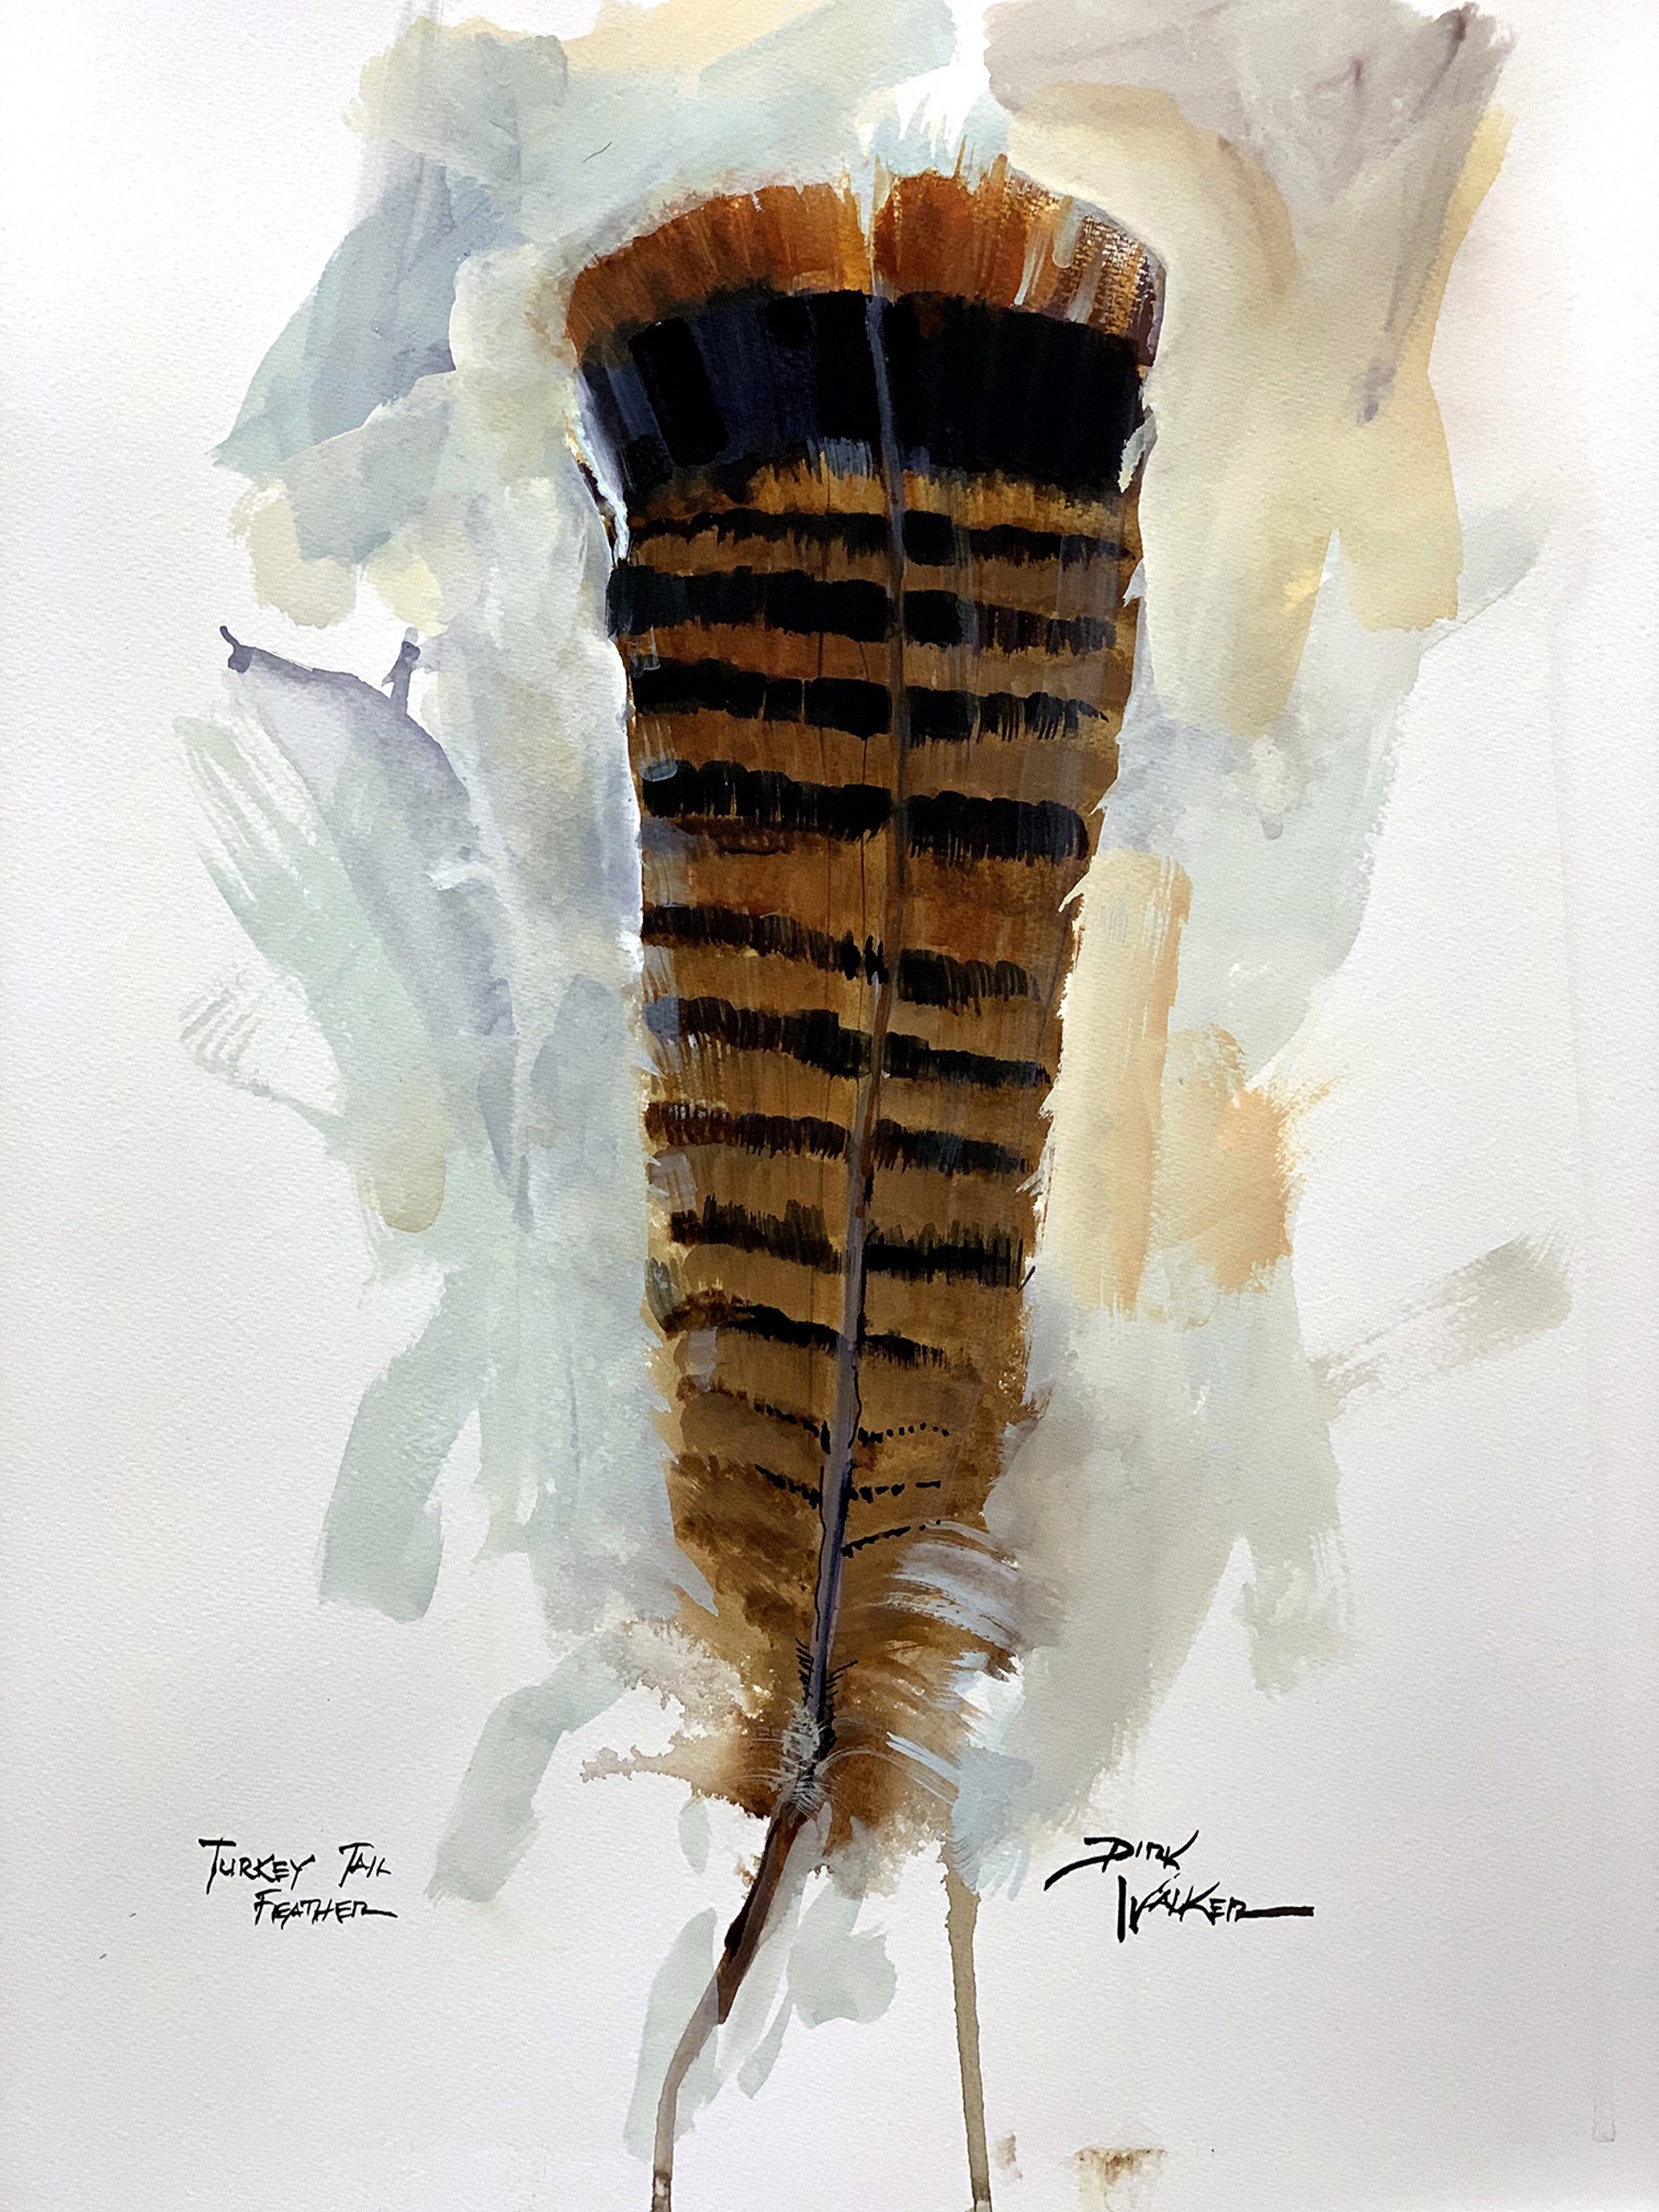 Turkey Tail Feather by Dirk Walker